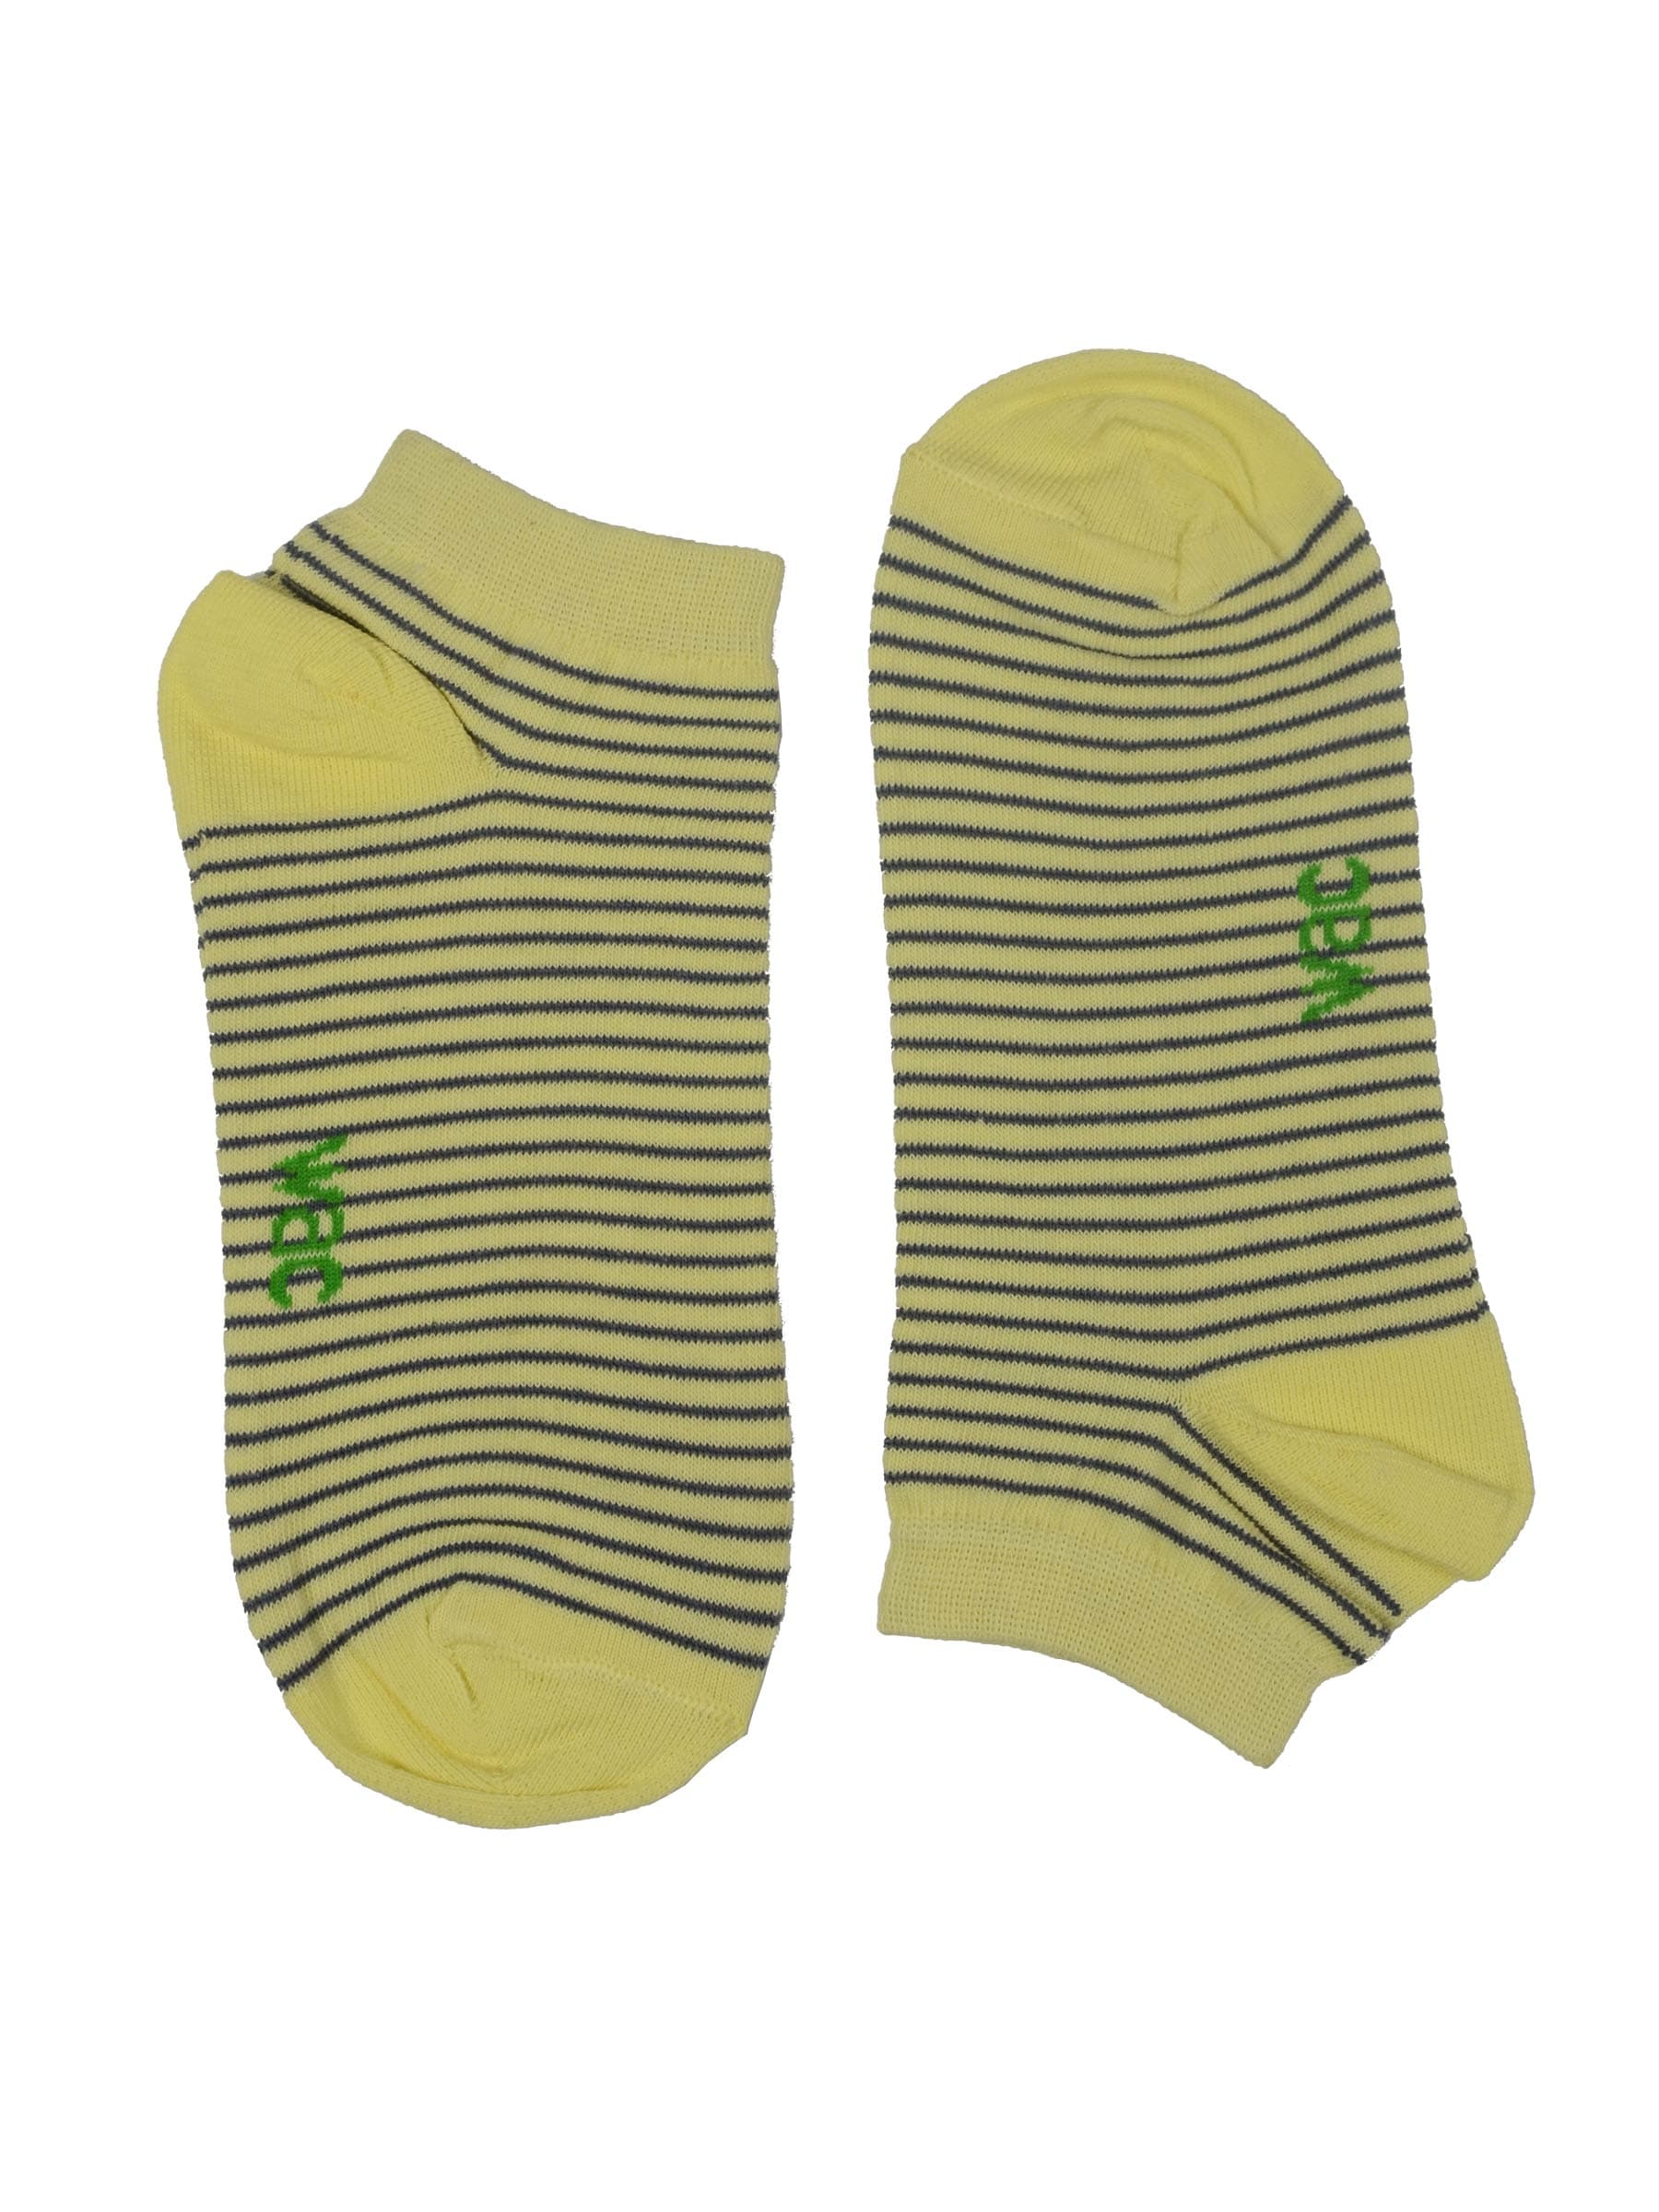 Wrangler Women's Lemon Secret Yellow Socks